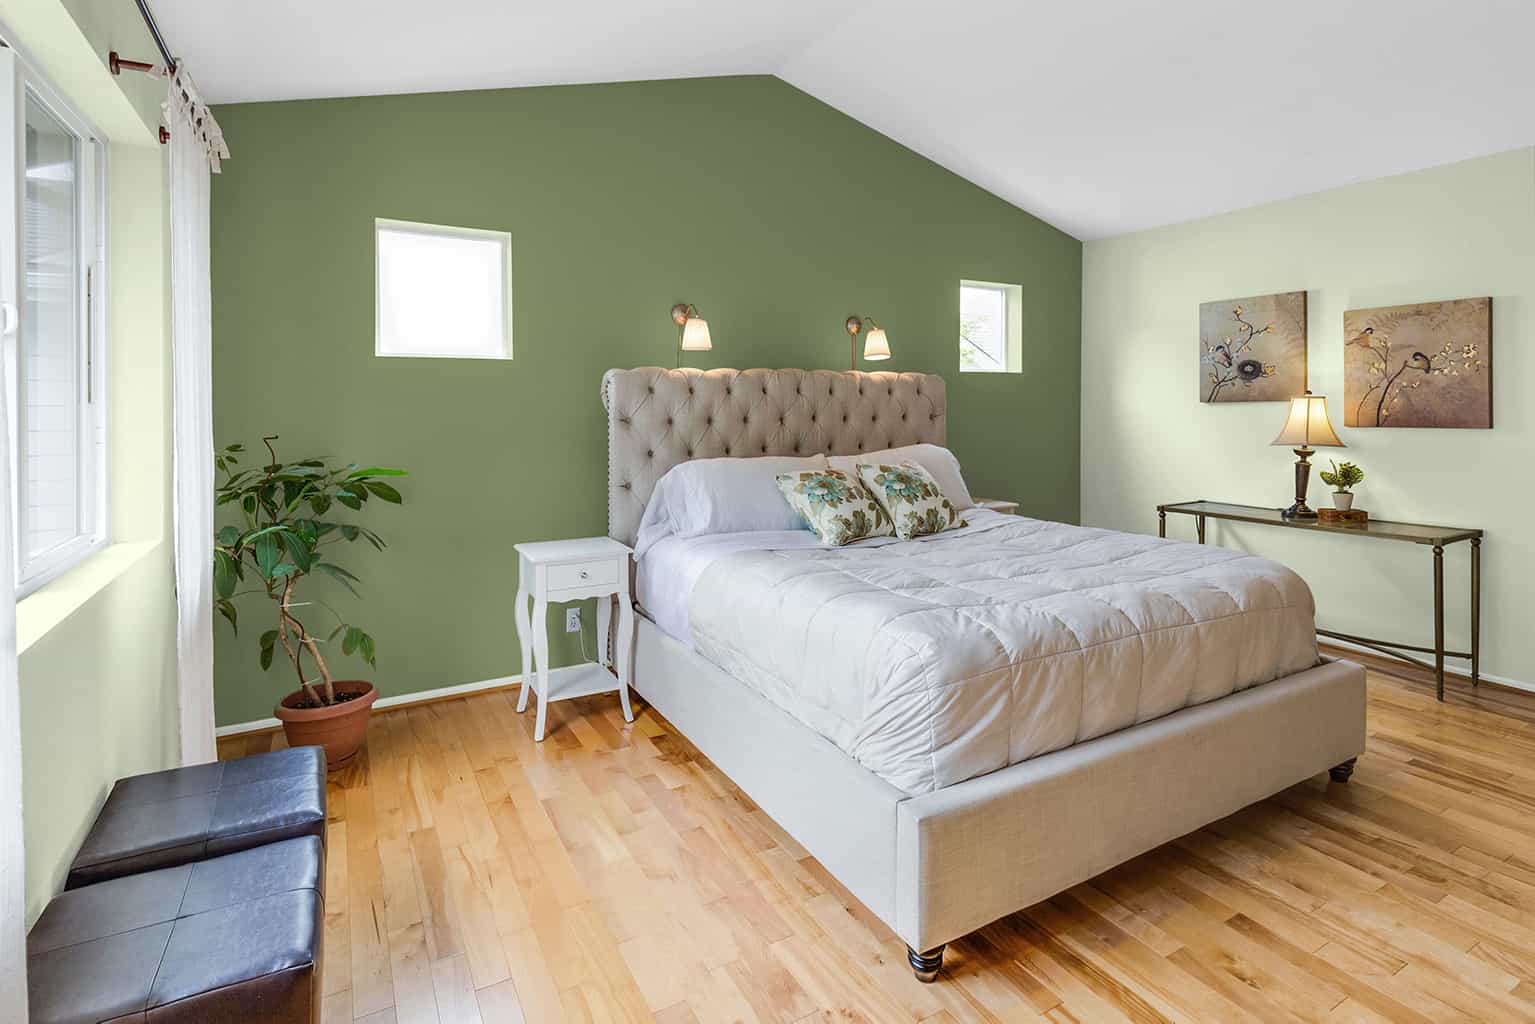 Explore Paint Colors For Bedrooms Previewpaintcom